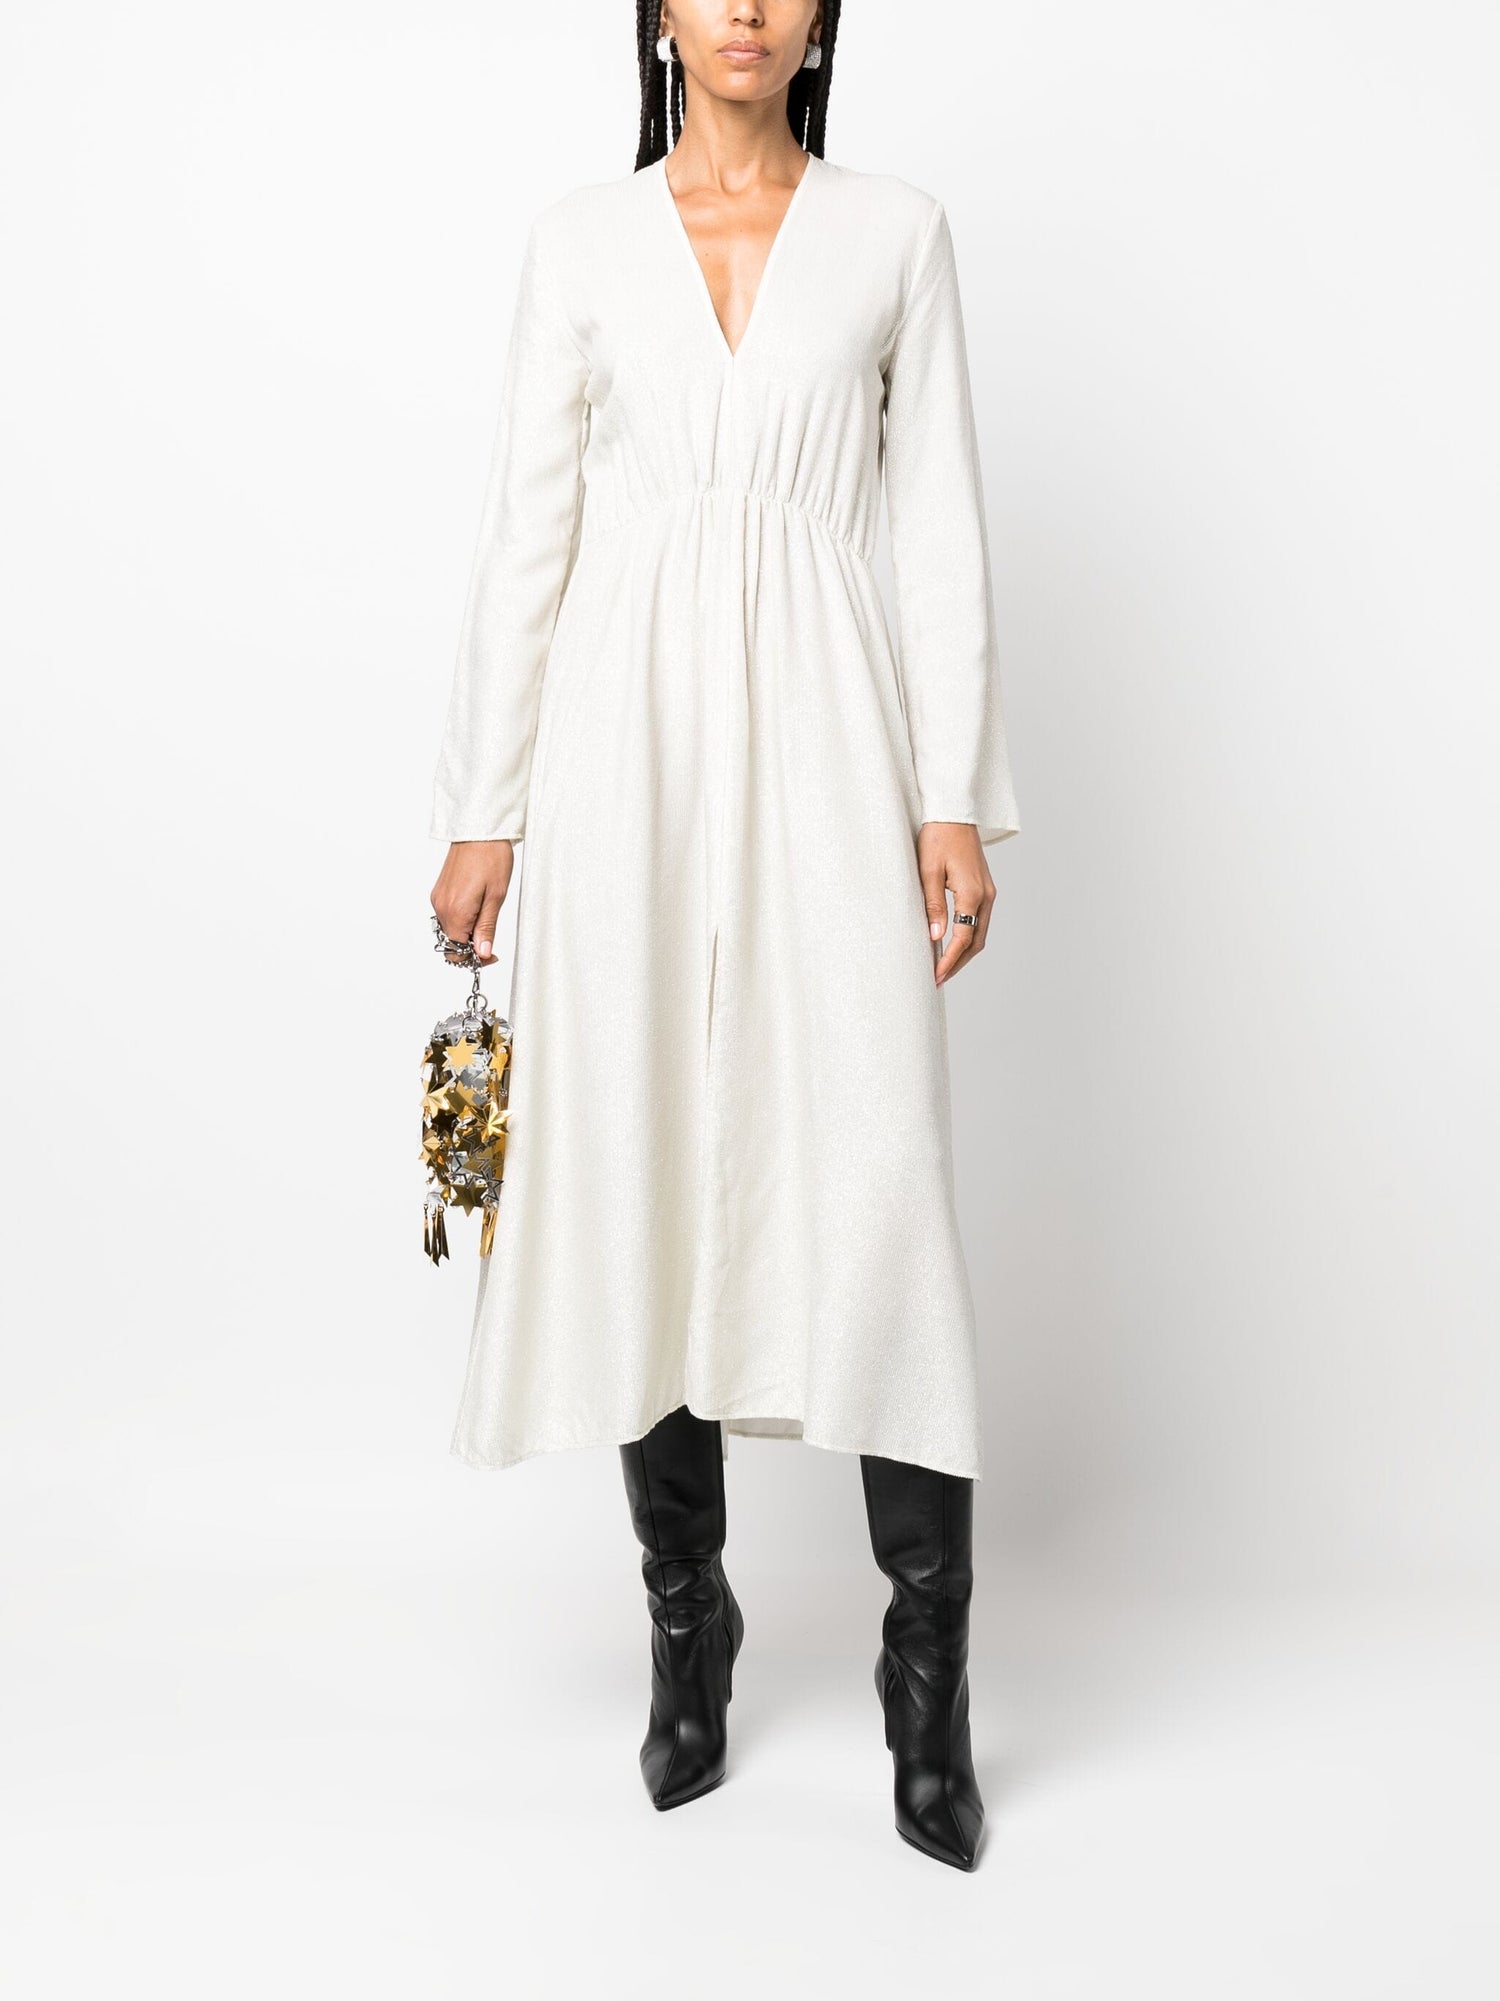 Long sleeves laminated velvet dress, platino